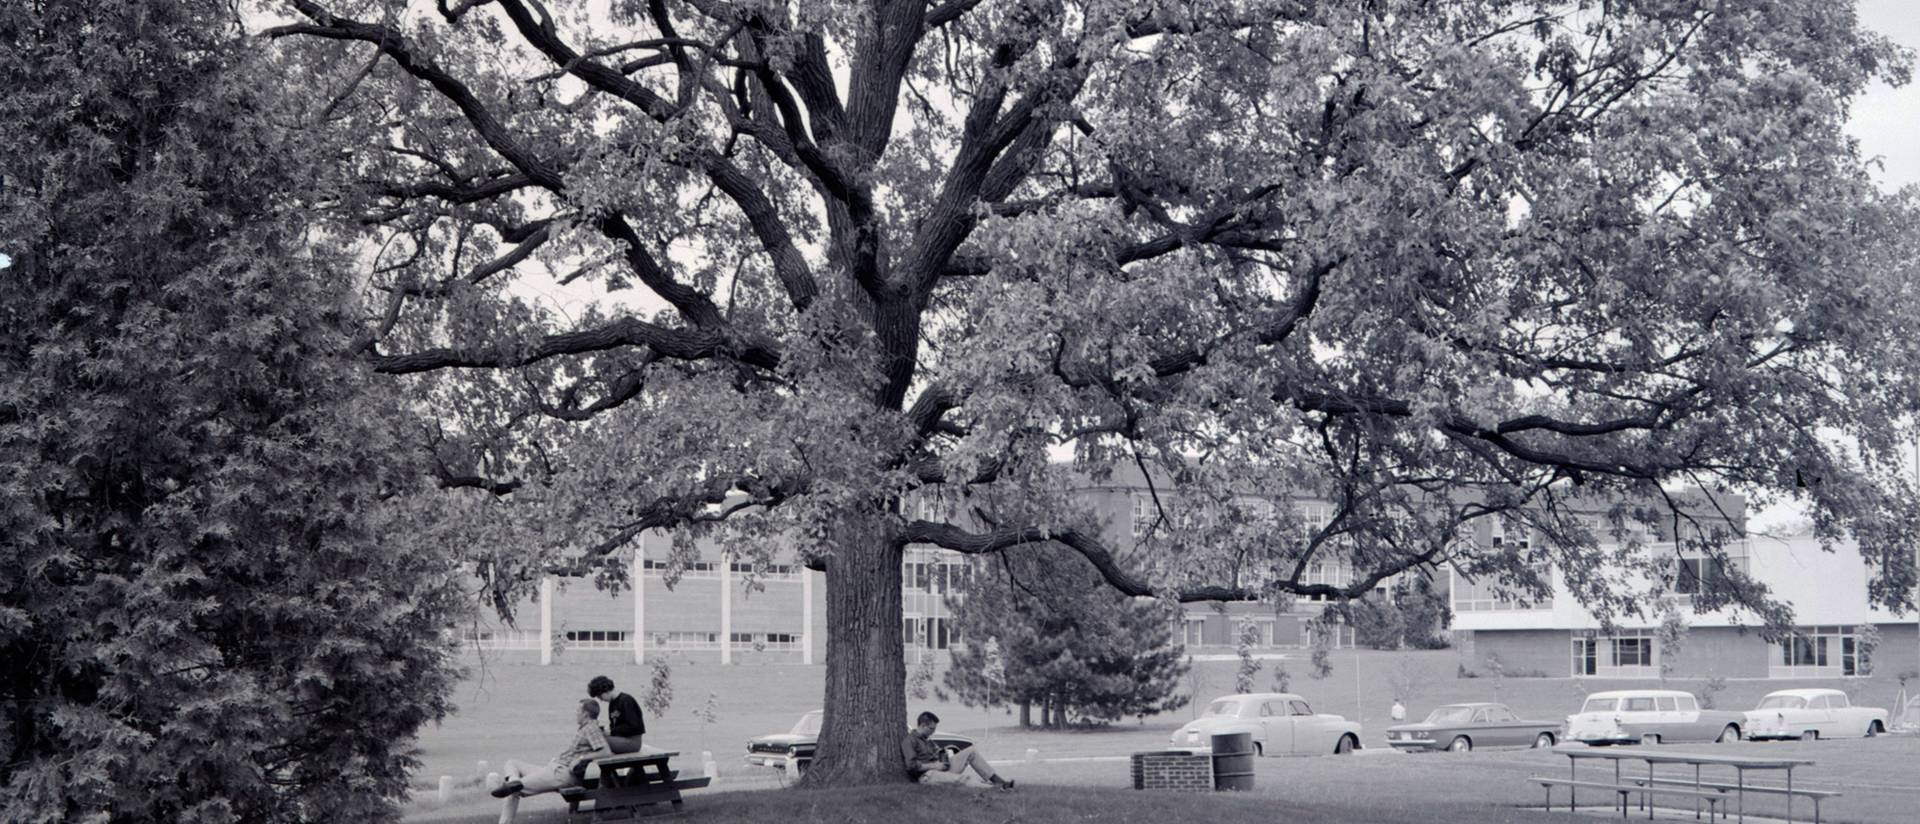 Council Oak tree at UW-Eau Claire 